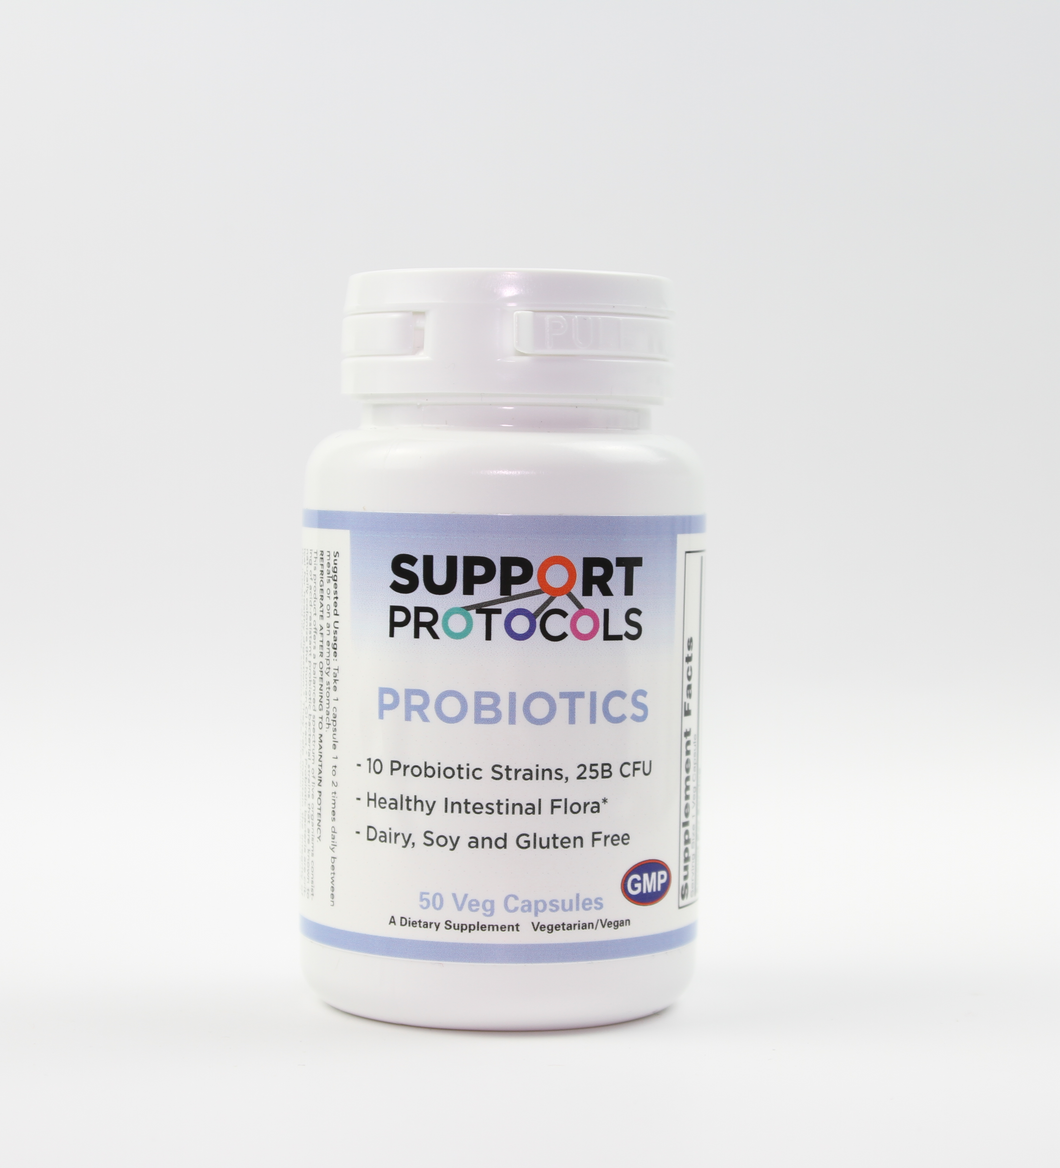 Probiotics - 10 Probiotic Strains 25B CFU 50 Veg Capsules